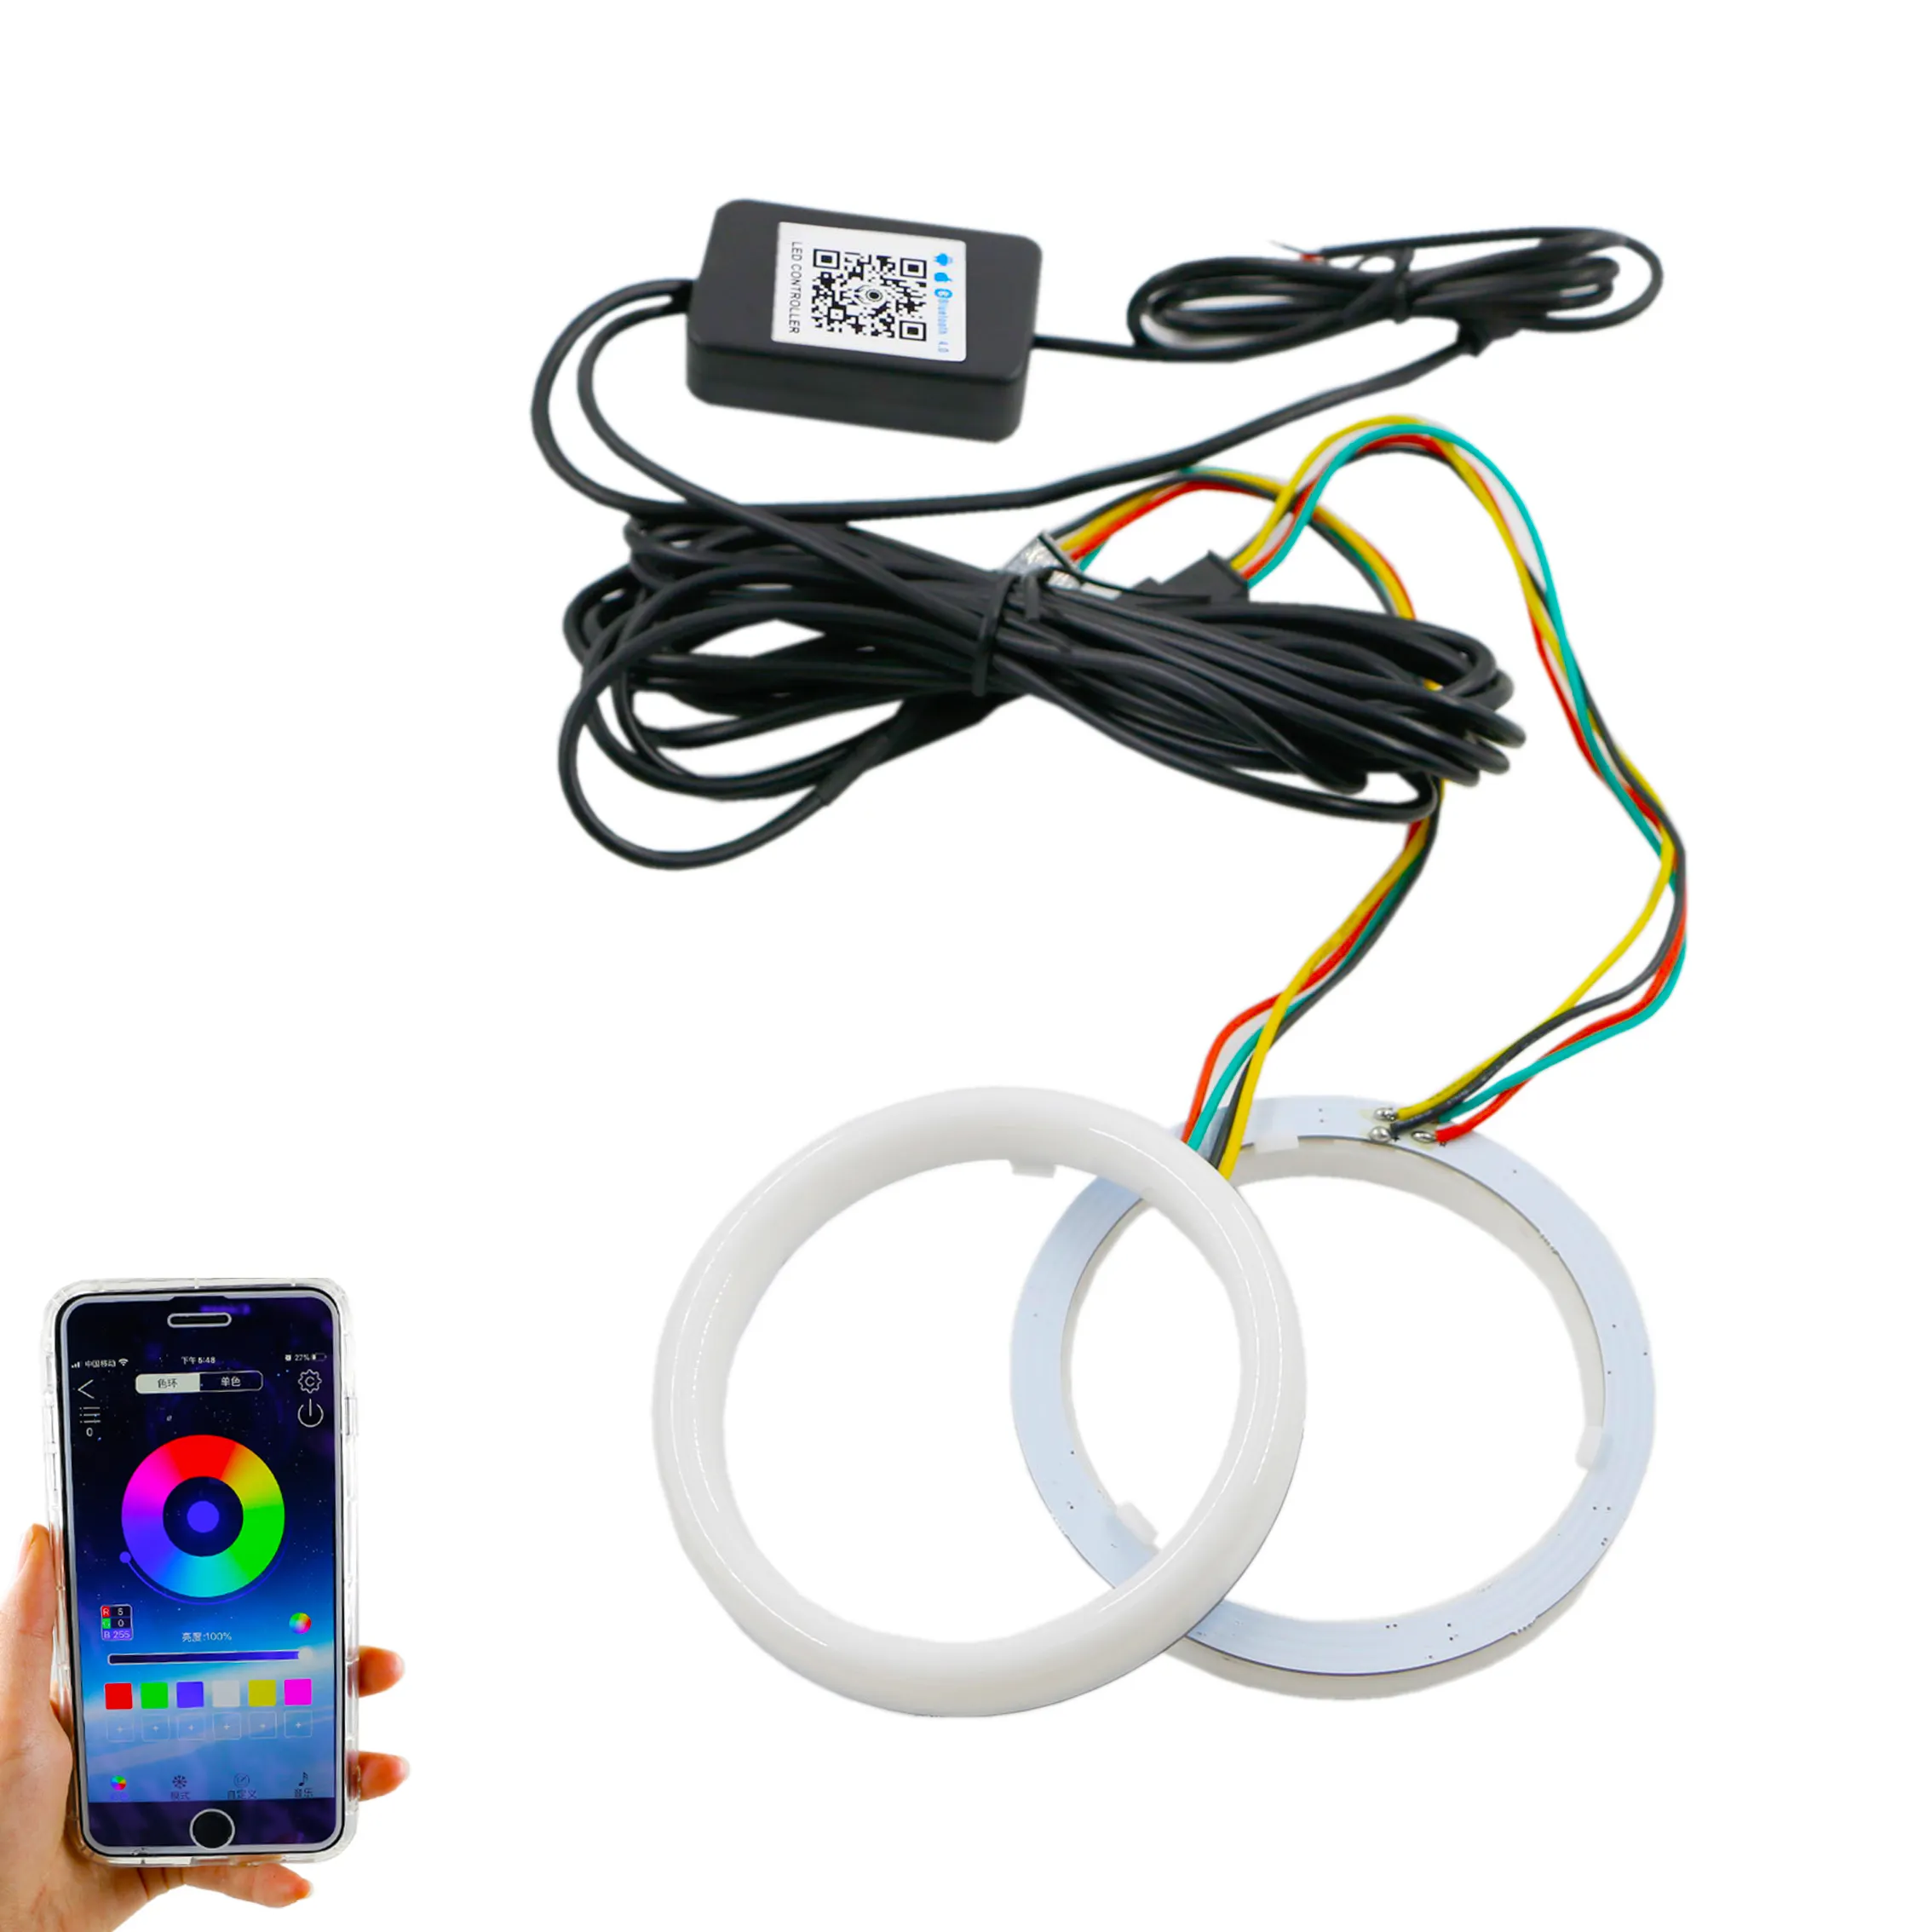 Anneaux de Halo RGB pour voiture, yeux d'ange, téléphone intelligent, iOS, Android, application de contrôle, Led multicolore, anneau de lumière, lampe de phare